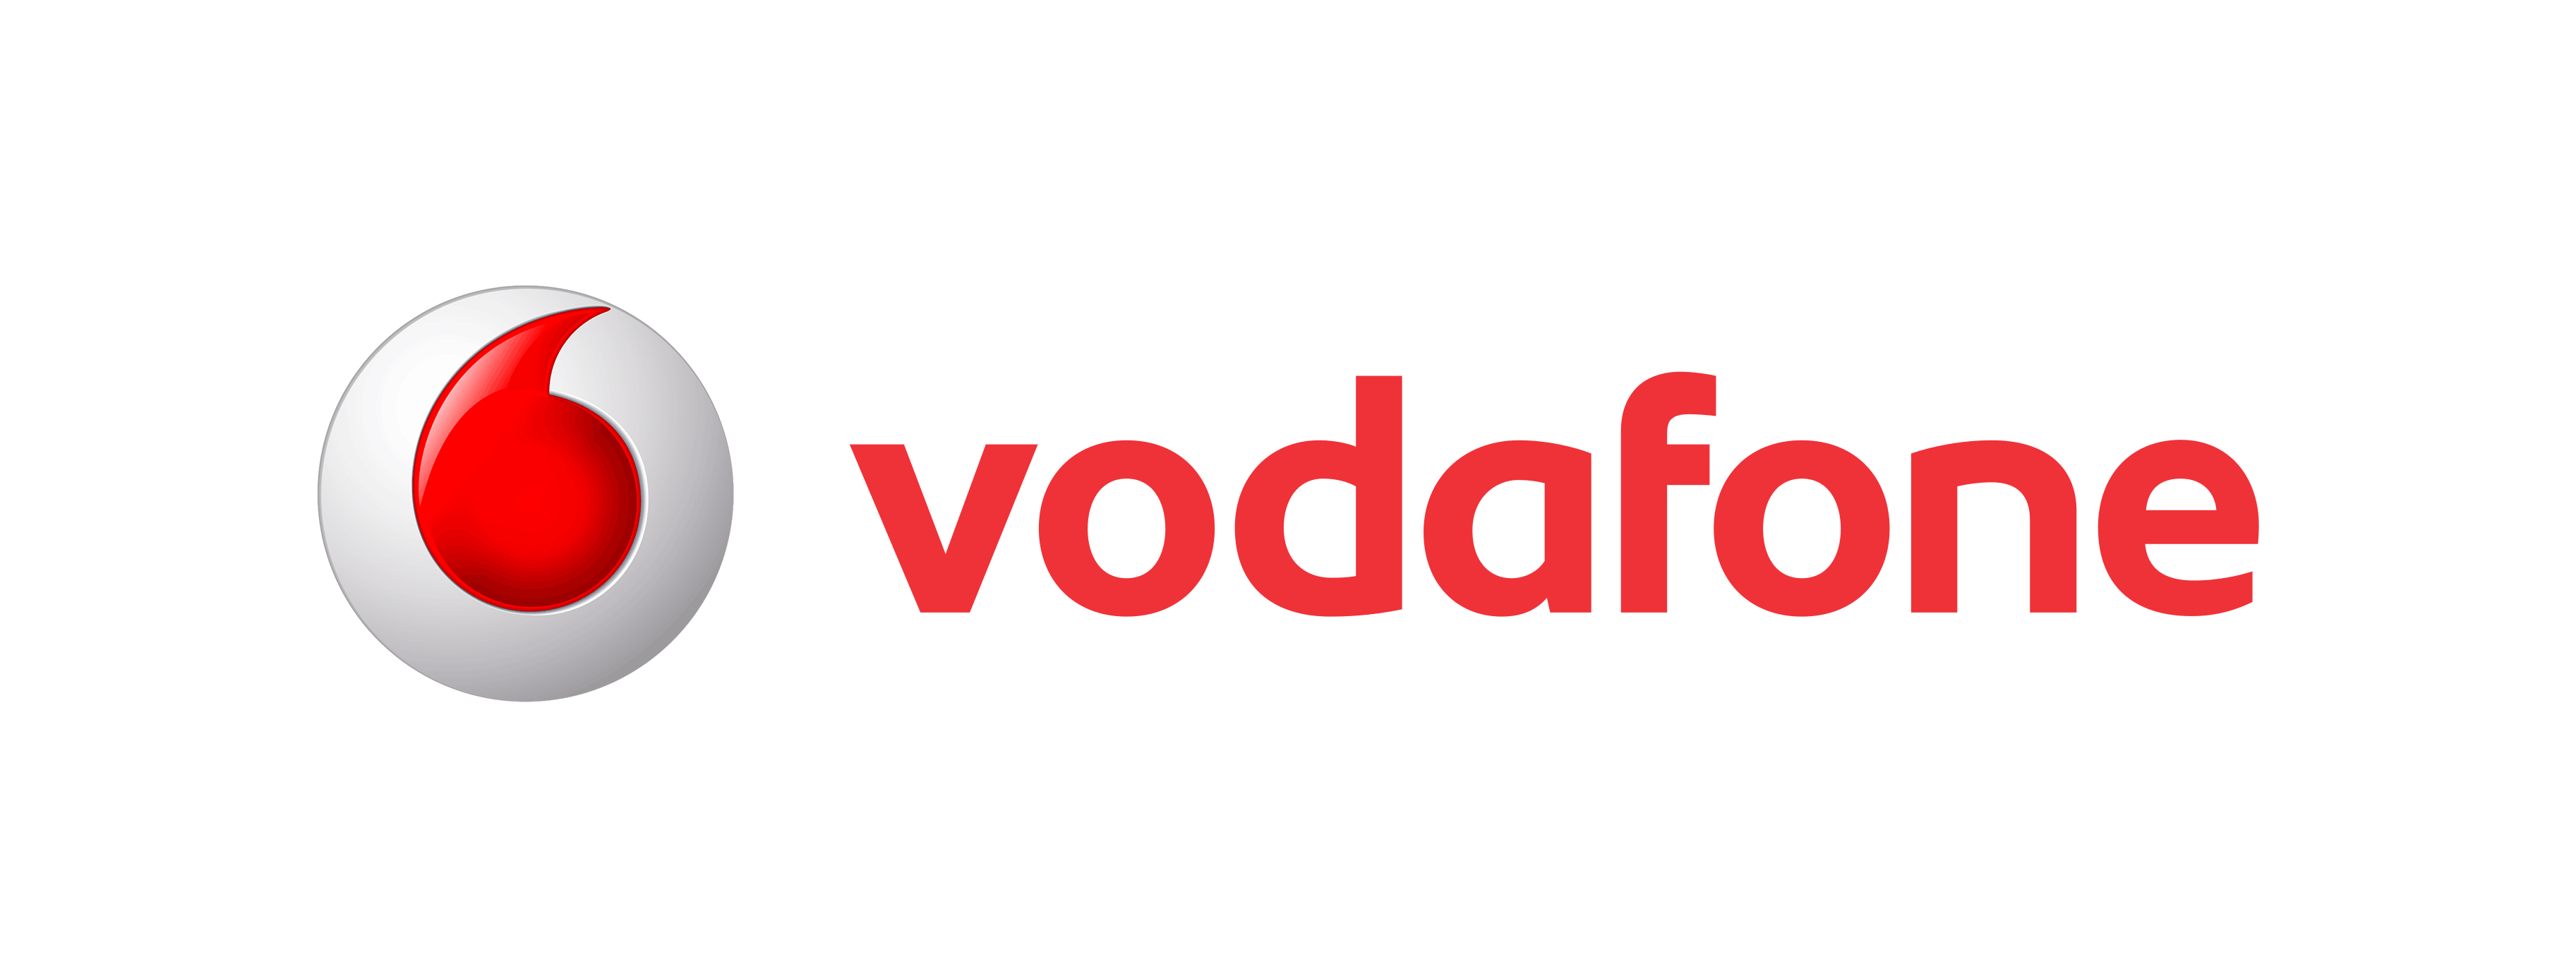 Transparent Background Vodafo